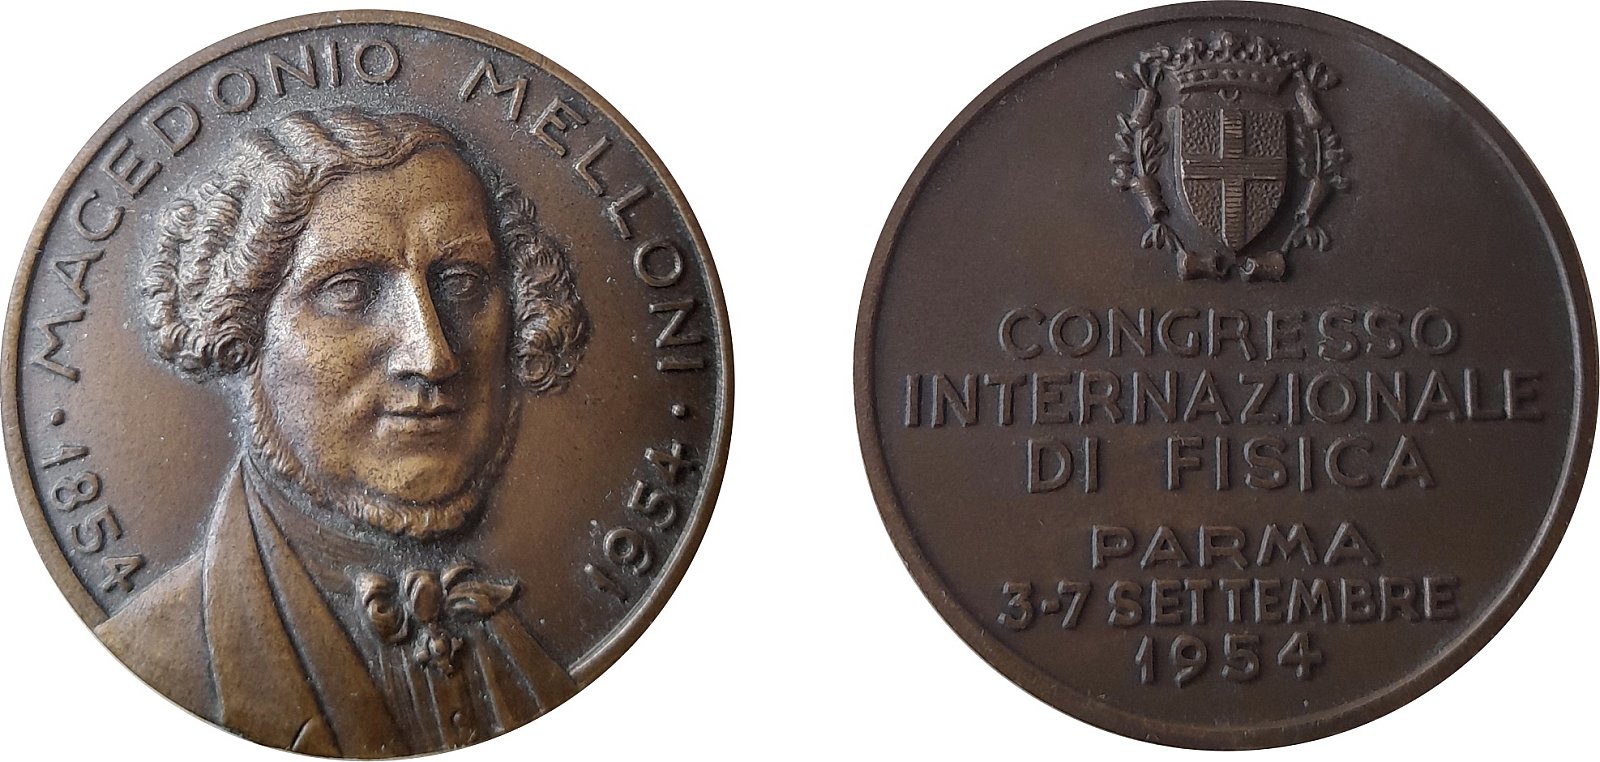 La medaglia celebrativa realizzata in occasione del convegno su M. Melloni, nel 1954. - Pagina della memoria